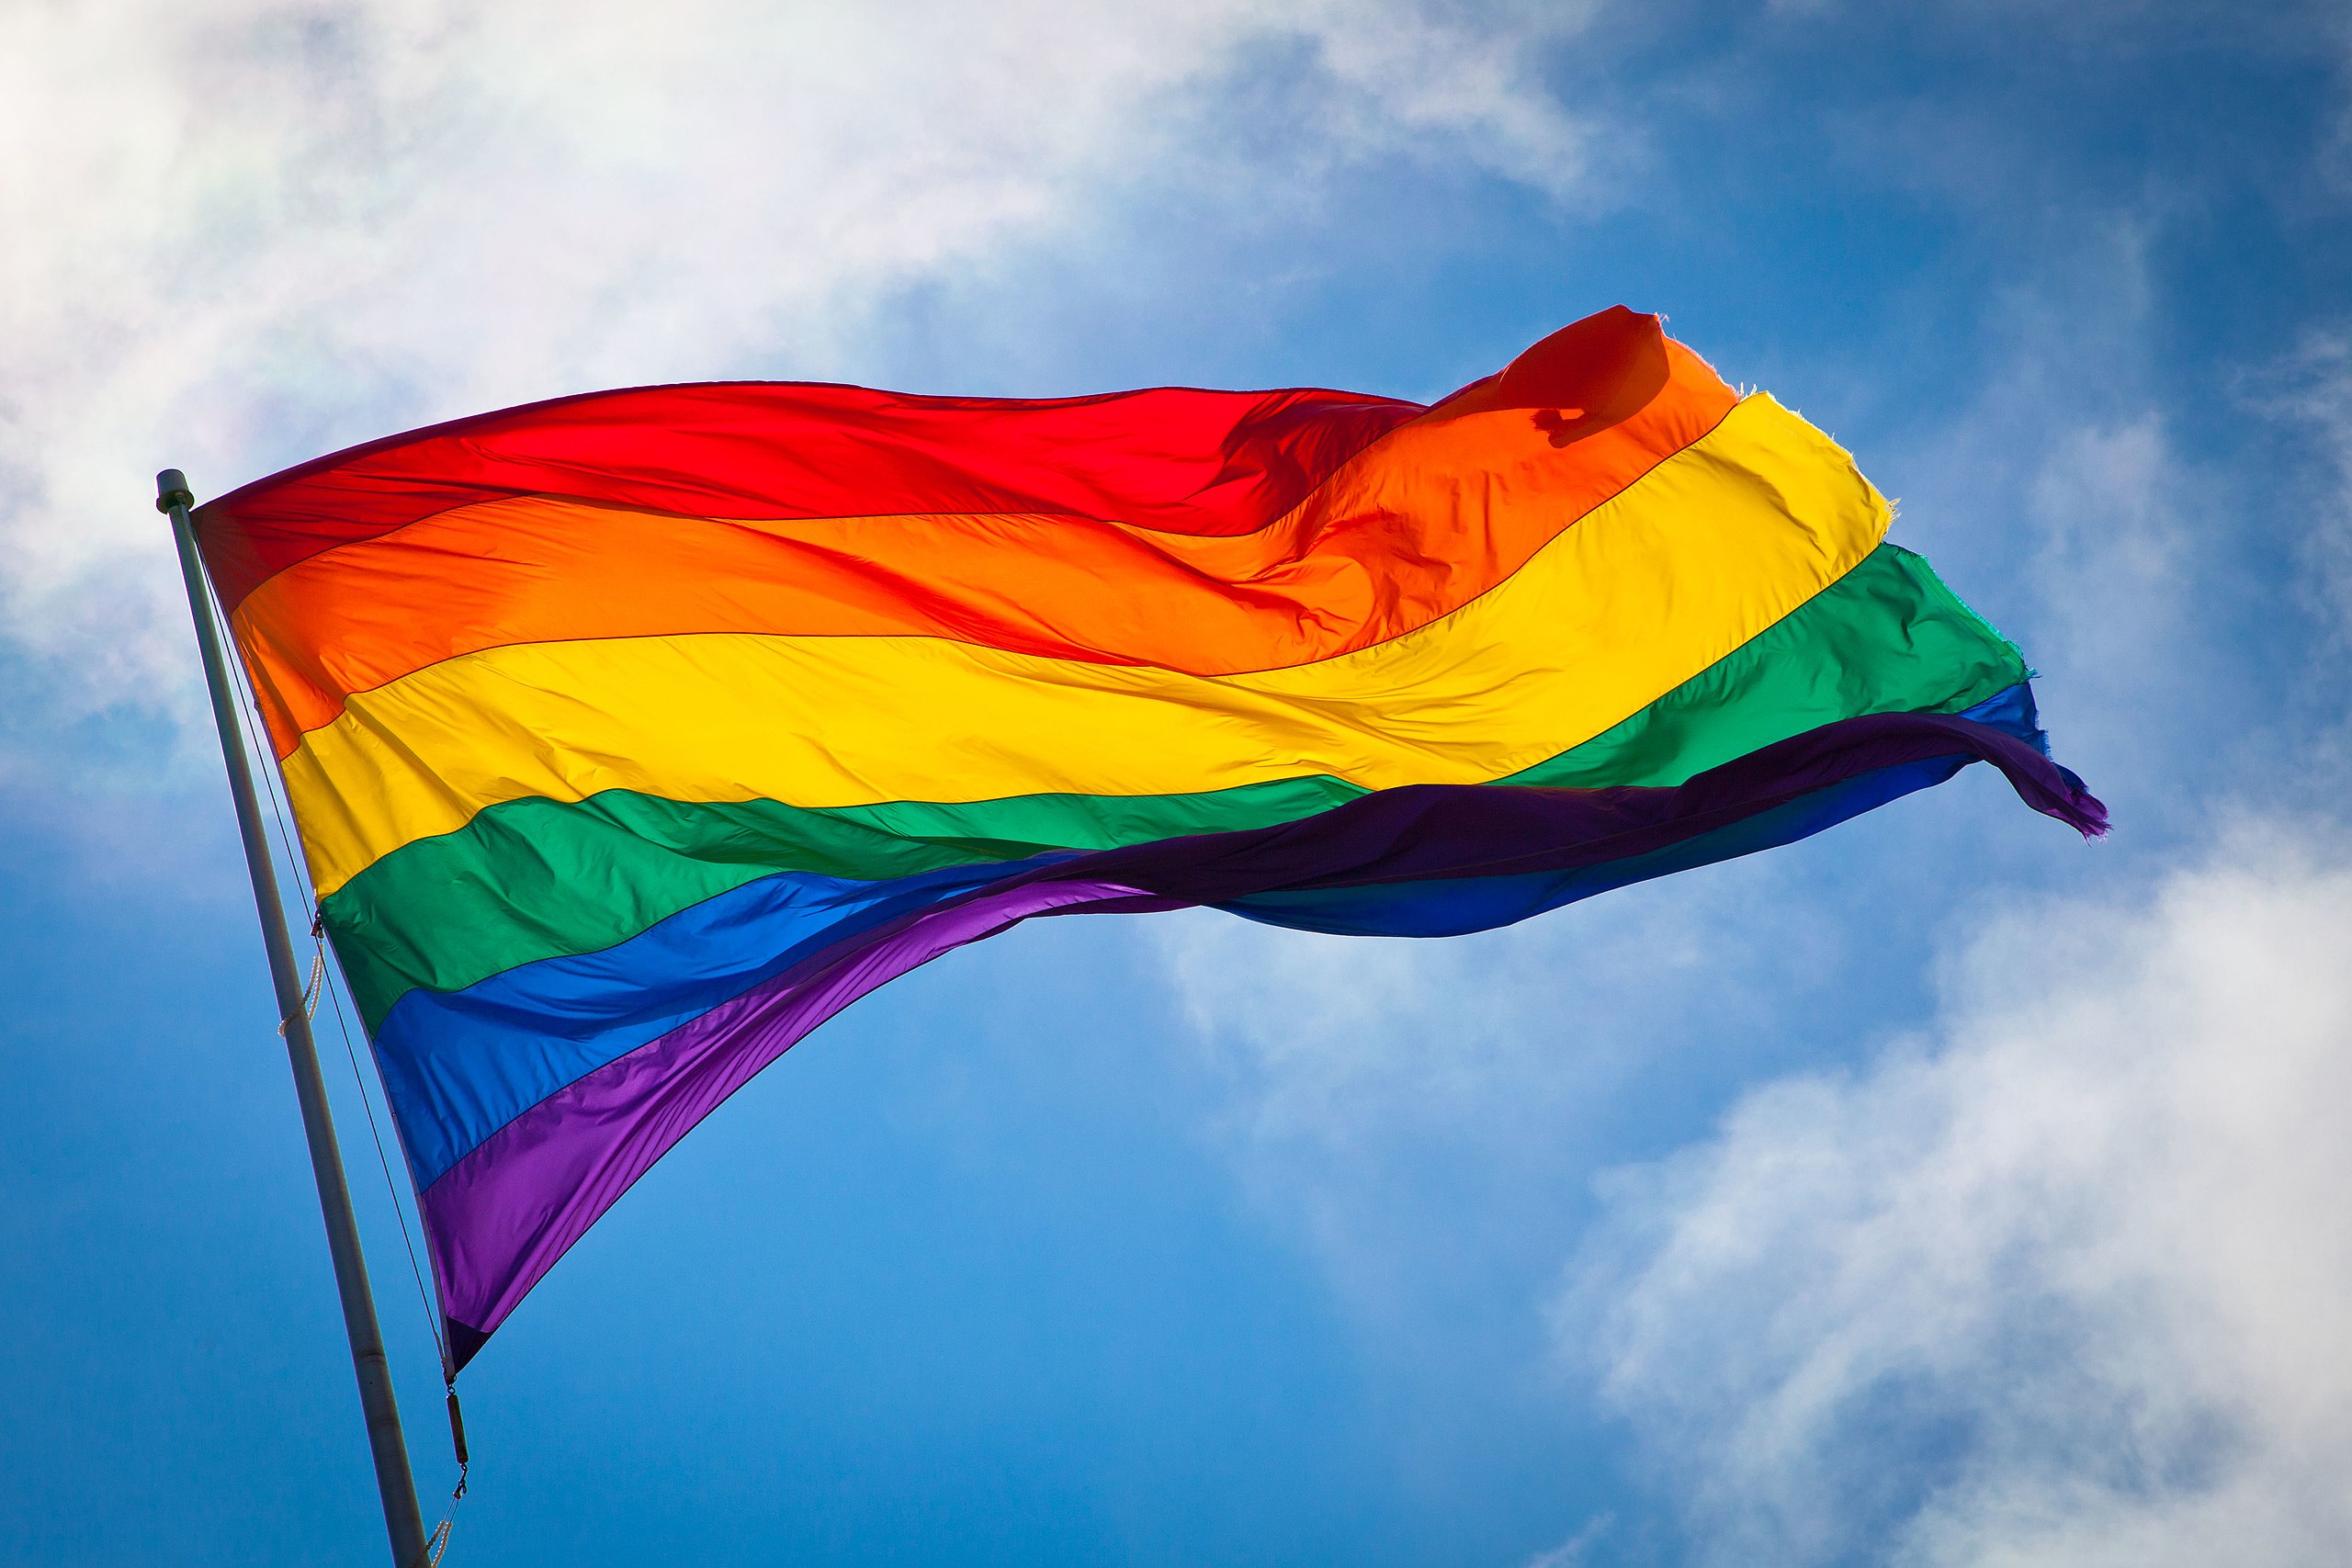 Sự ủng hộ cho cộng đồng LGBT đã tăng lên đáng kể trong những năm qua tại Việt Nam. Biểu tượng của sự đoàn kết và sự chấp nhận, cờ LGBT bay lên đầy màu sắc ở nhiều khu vực. Năm 2024 sẽ tiếp tục đón nhận sự phát triển tích cực của cộng đồng này và sự đa dạng trong văn hóa và quan điểm. Hãy xem hình để cảm nhận tinh thần chân thành và yêu thương đối với cộng đồng LGBT tại Việt Nam!